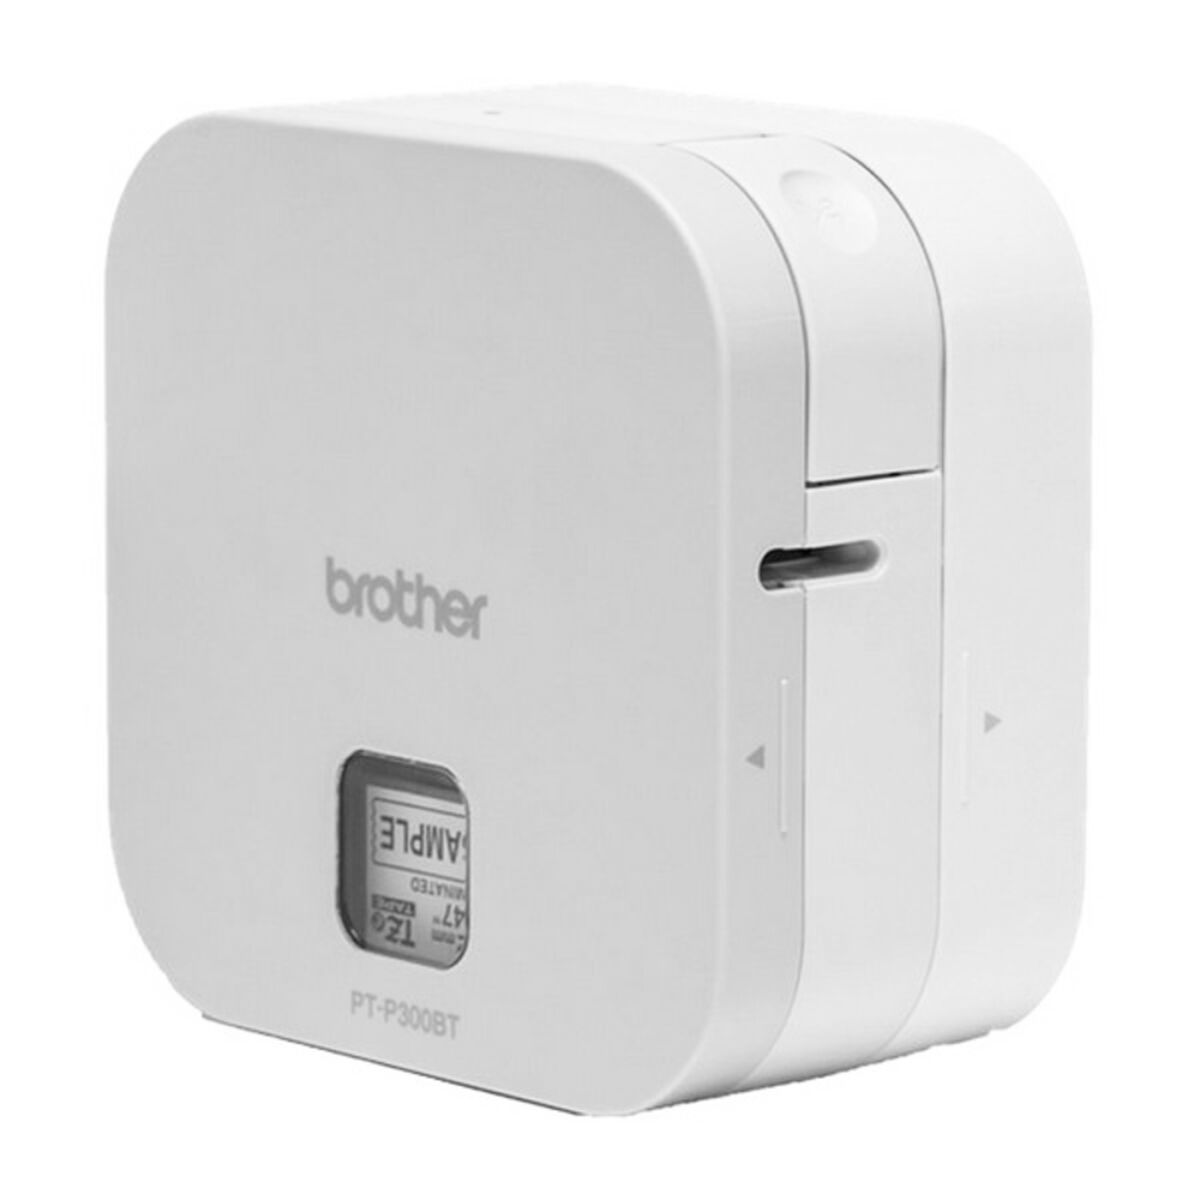 Cube BROTHER Etikettendrucker Weiß PTP300BT